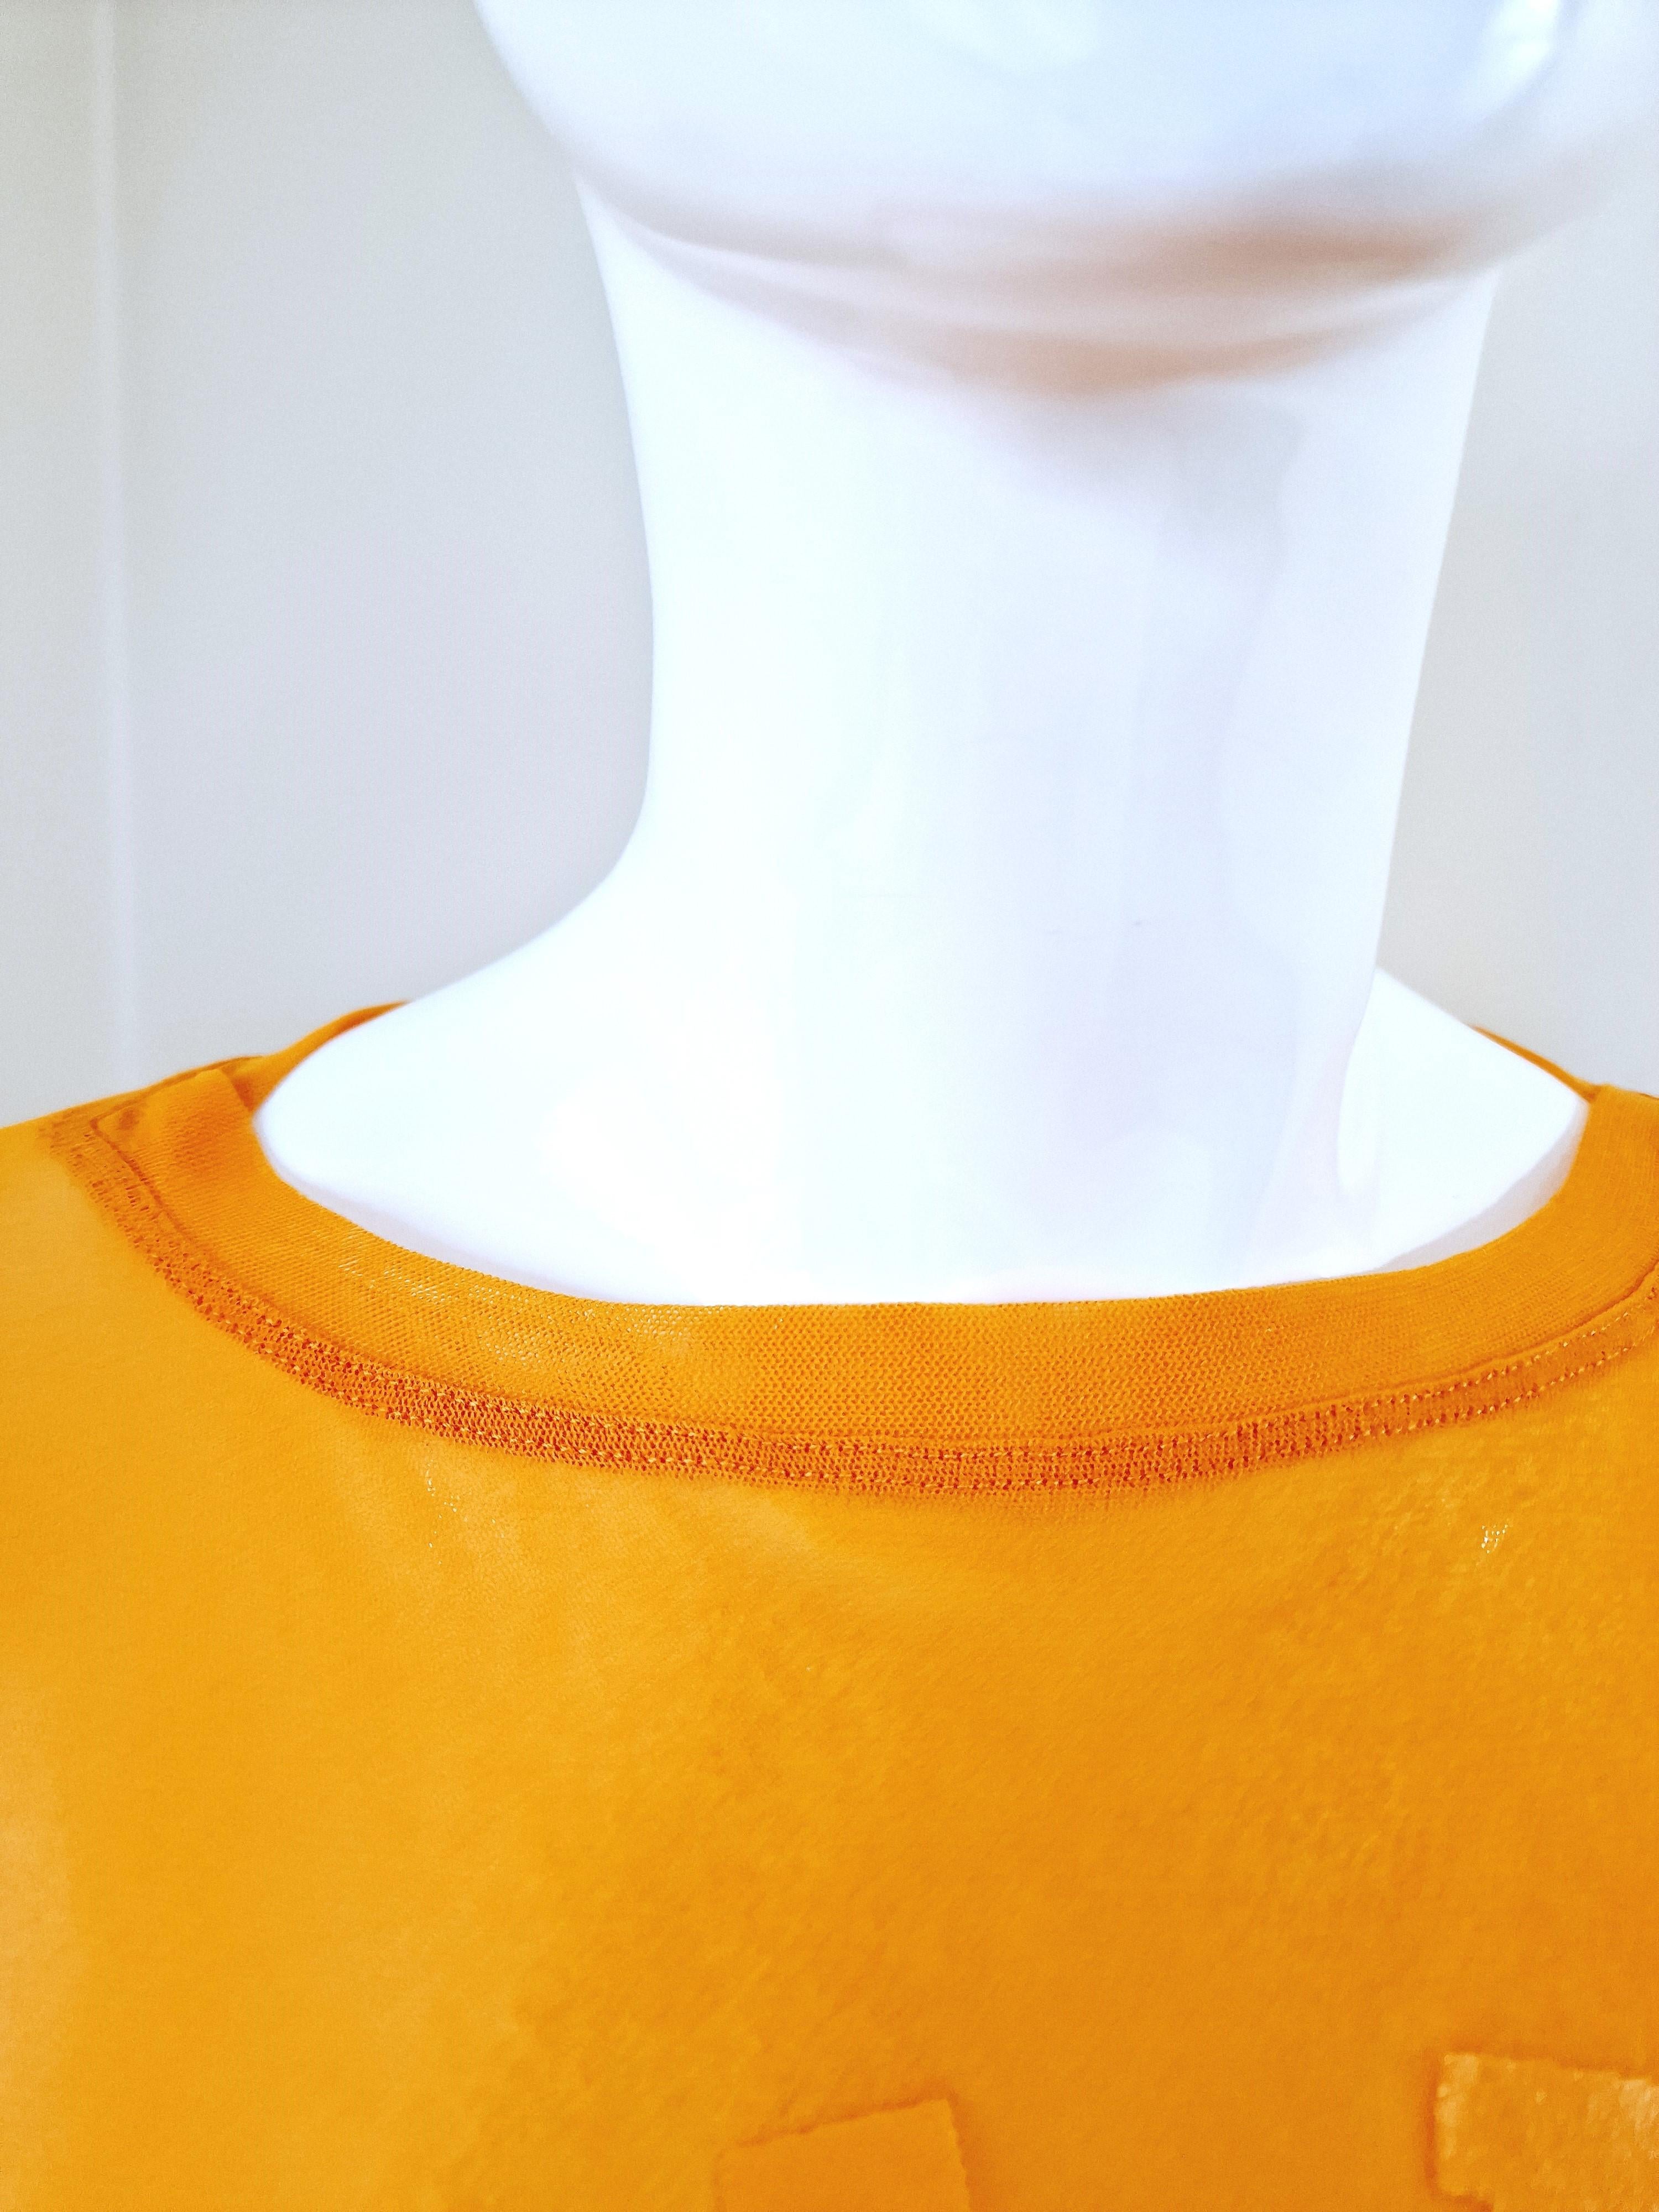 Jean Paul Gaultier Sex Sybmol Soleil Orange Logo Text Men Shirt Large XL Top For Sale 4